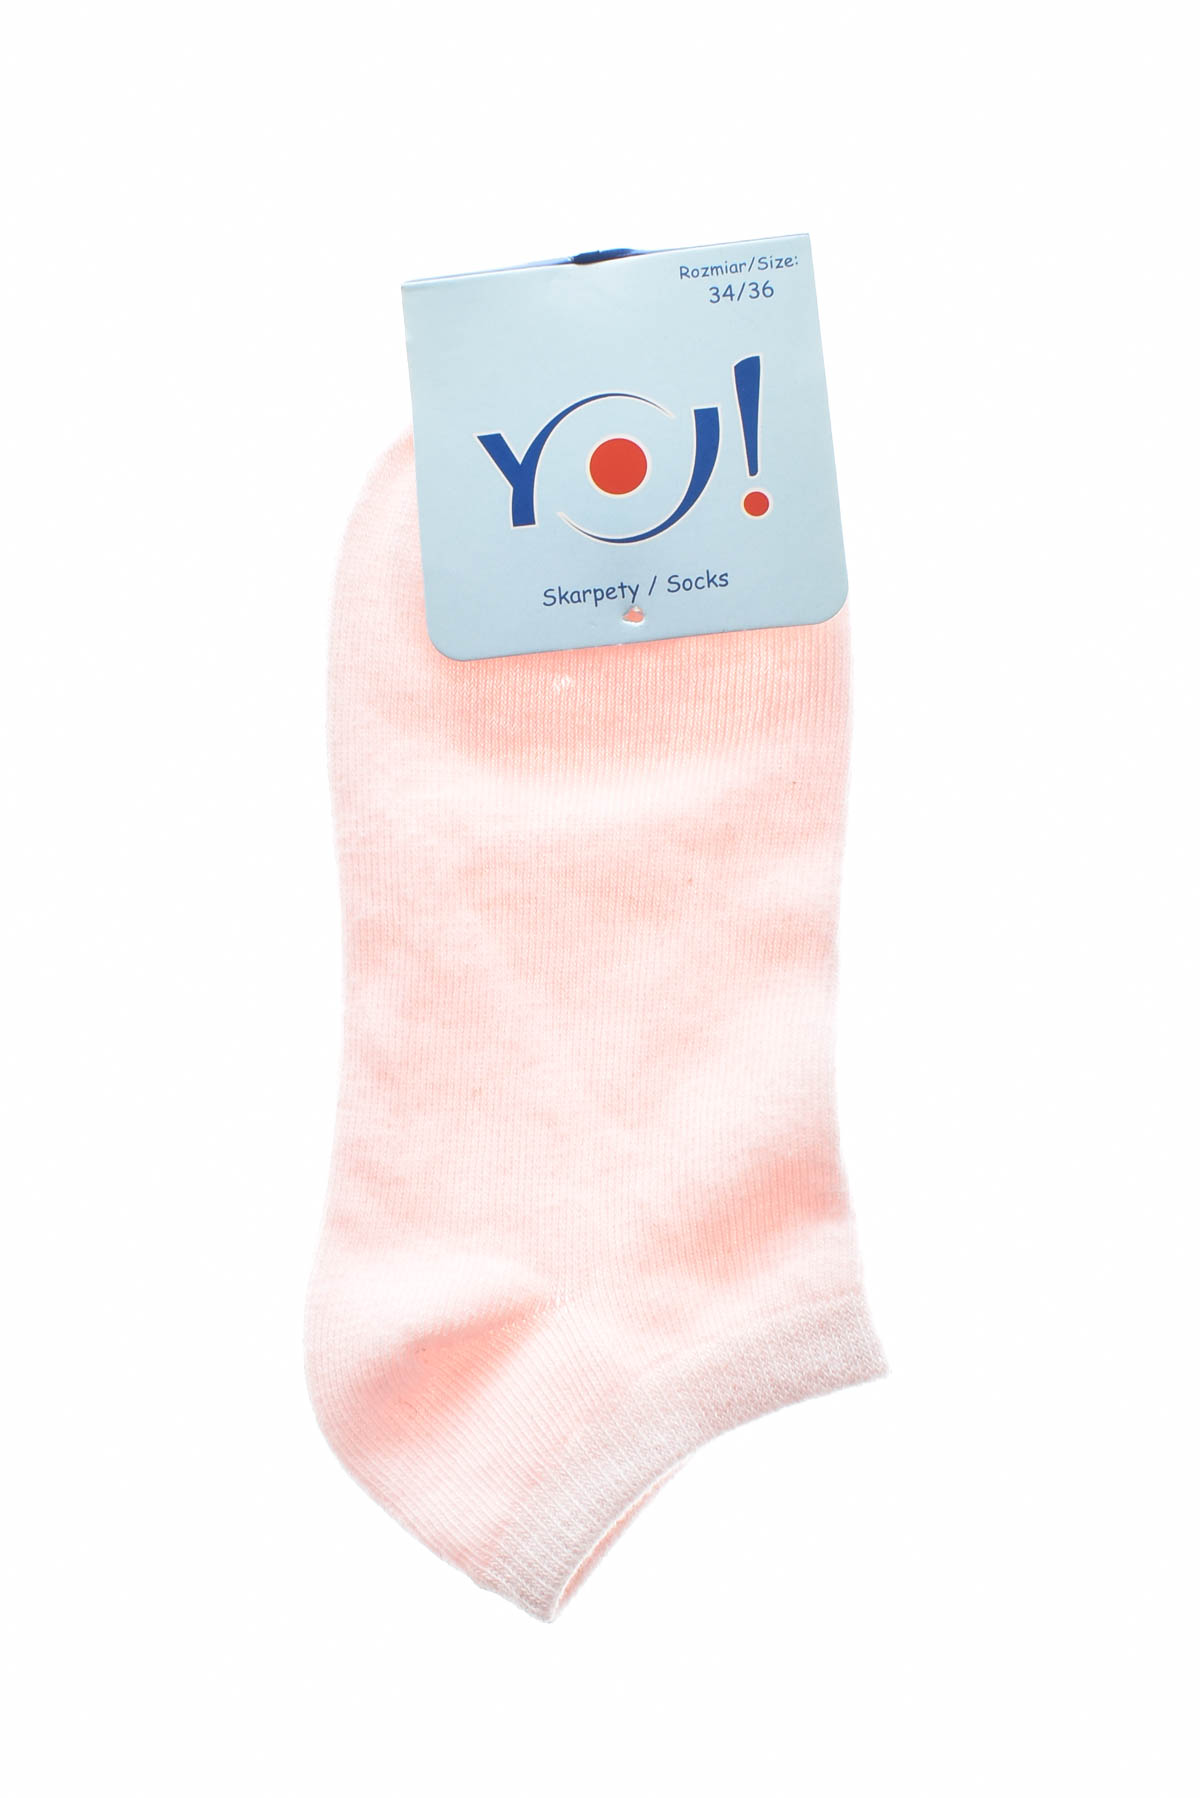 Παιδικές κάλτσες - Yo! CLub - 1